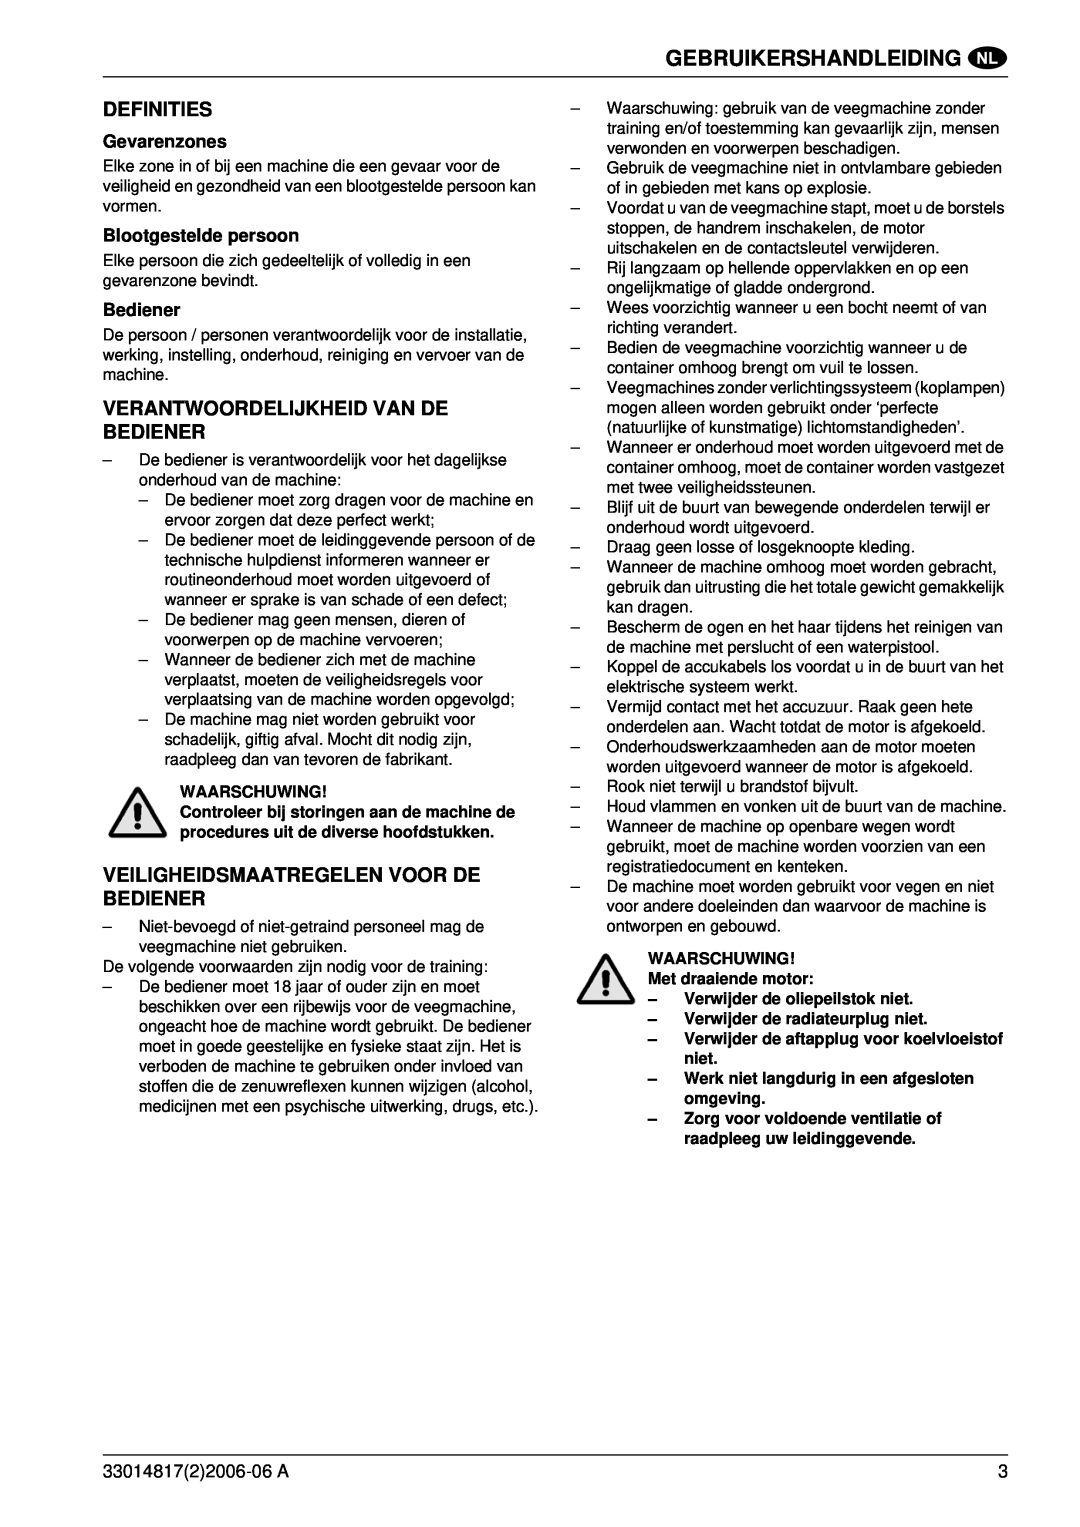 Nilfisk-ALTO SR1800C B-D Definities, Verantwoordelijkheid Van De Bediener, Veiligheidsmaatregelen Voor De Bediener 